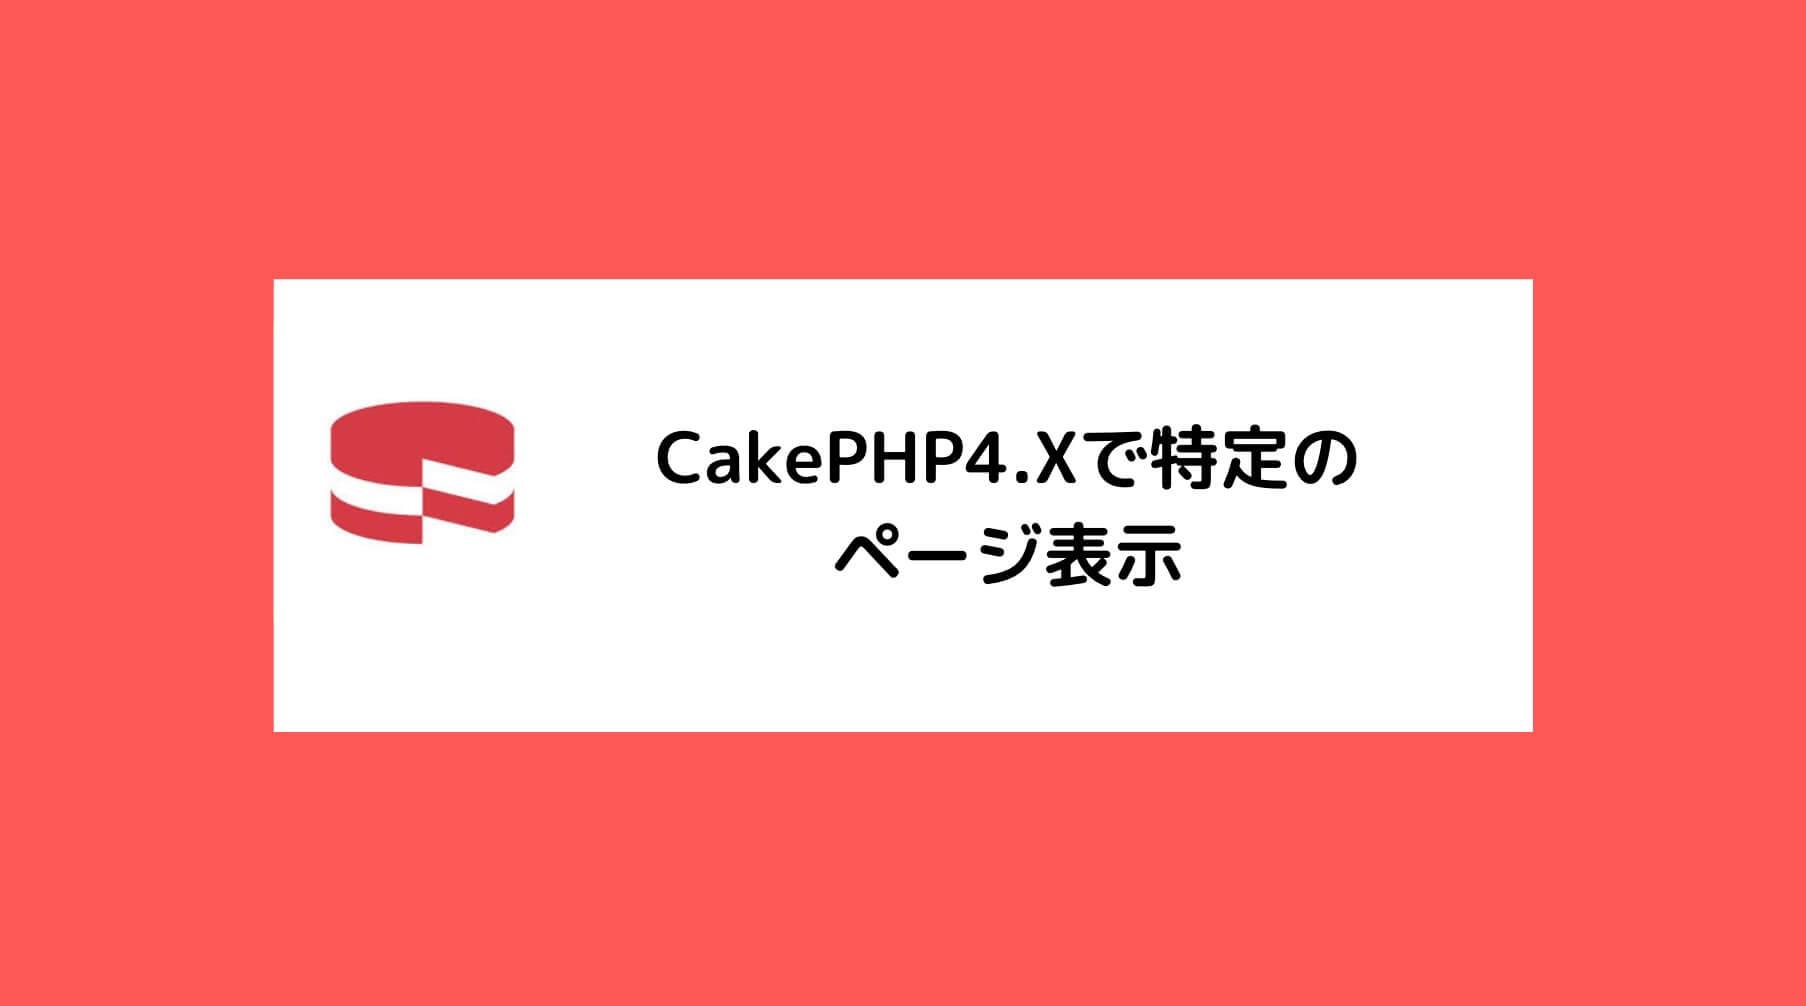 CakePHP4.Xで特定のページ表示と書かれた画像